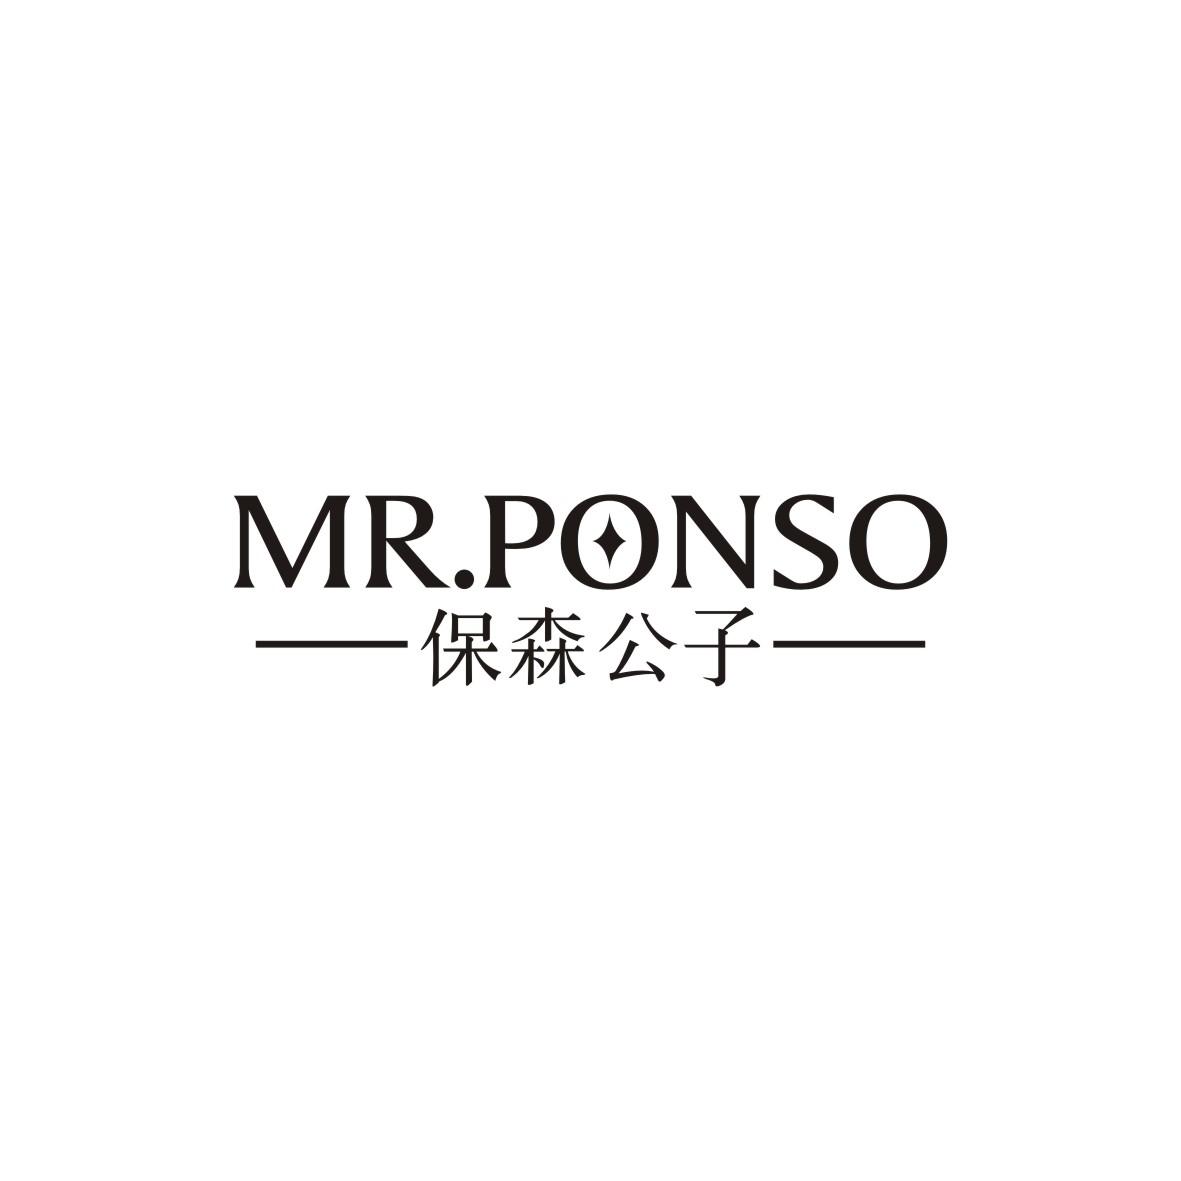 保森公子
MR.Ponso西装商标转让费用买卖交易流程